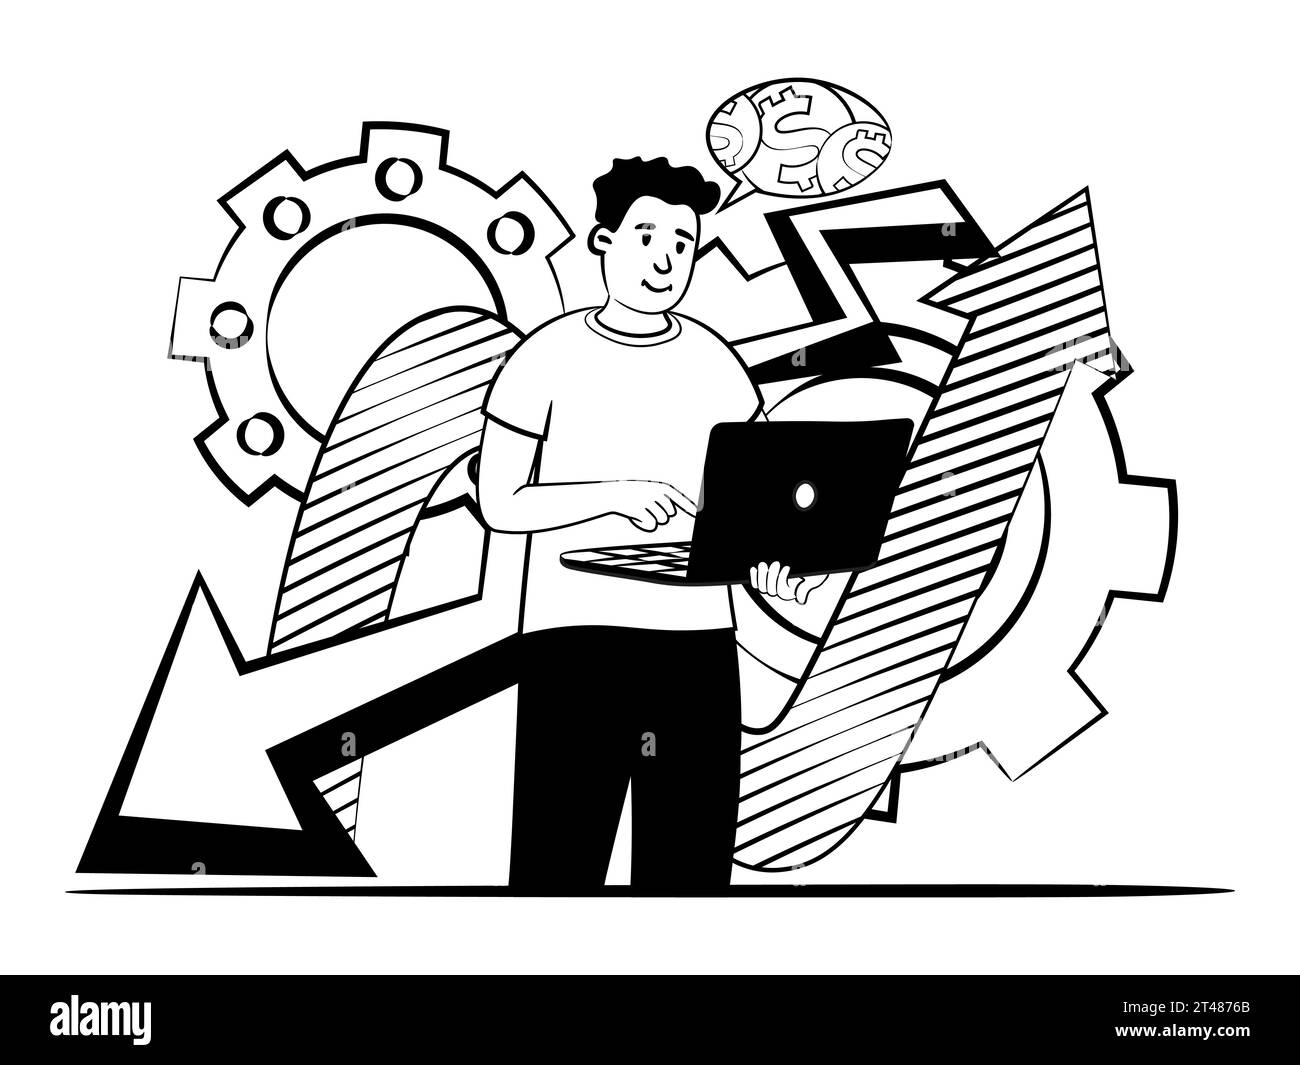 immagine vettoriale disegnata a mano di un uomo che progetta il business digitale per il futuro Illustrazione Vettoriale